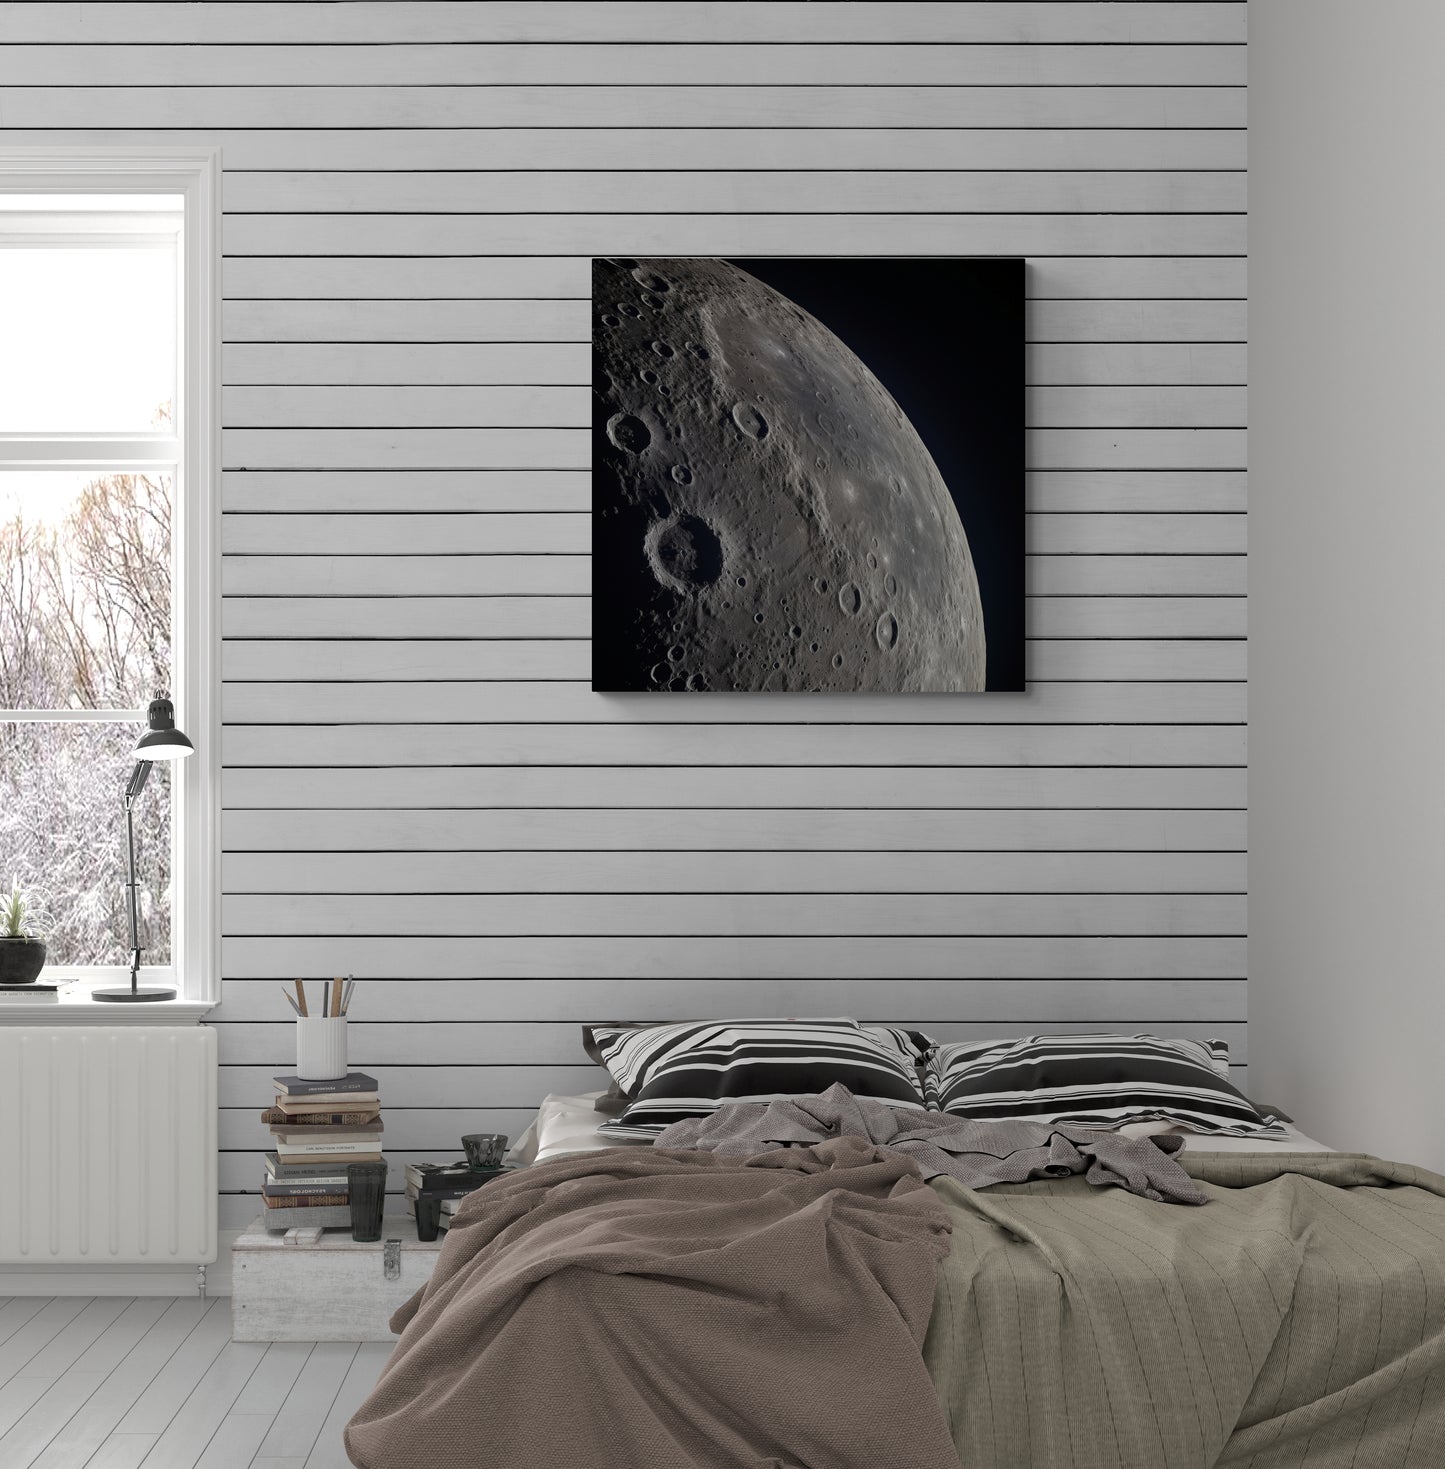 Közeli felvétel a Holdról 2